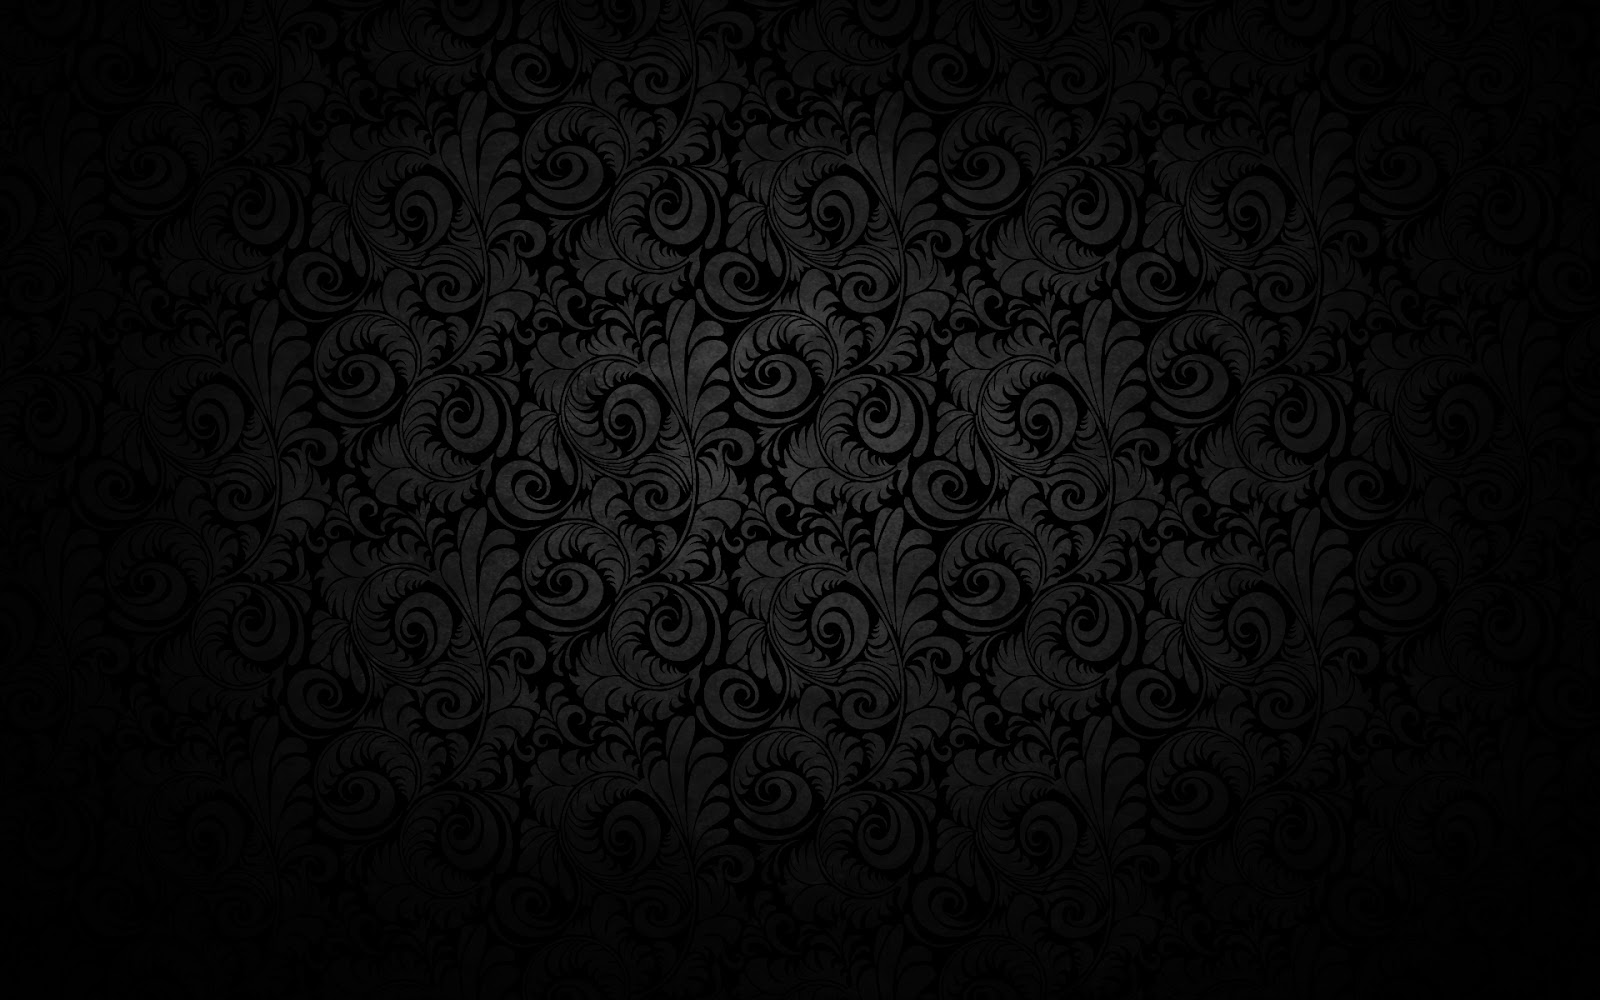 Dark Background Grey Floral Pattern HD Texture Image Jpg